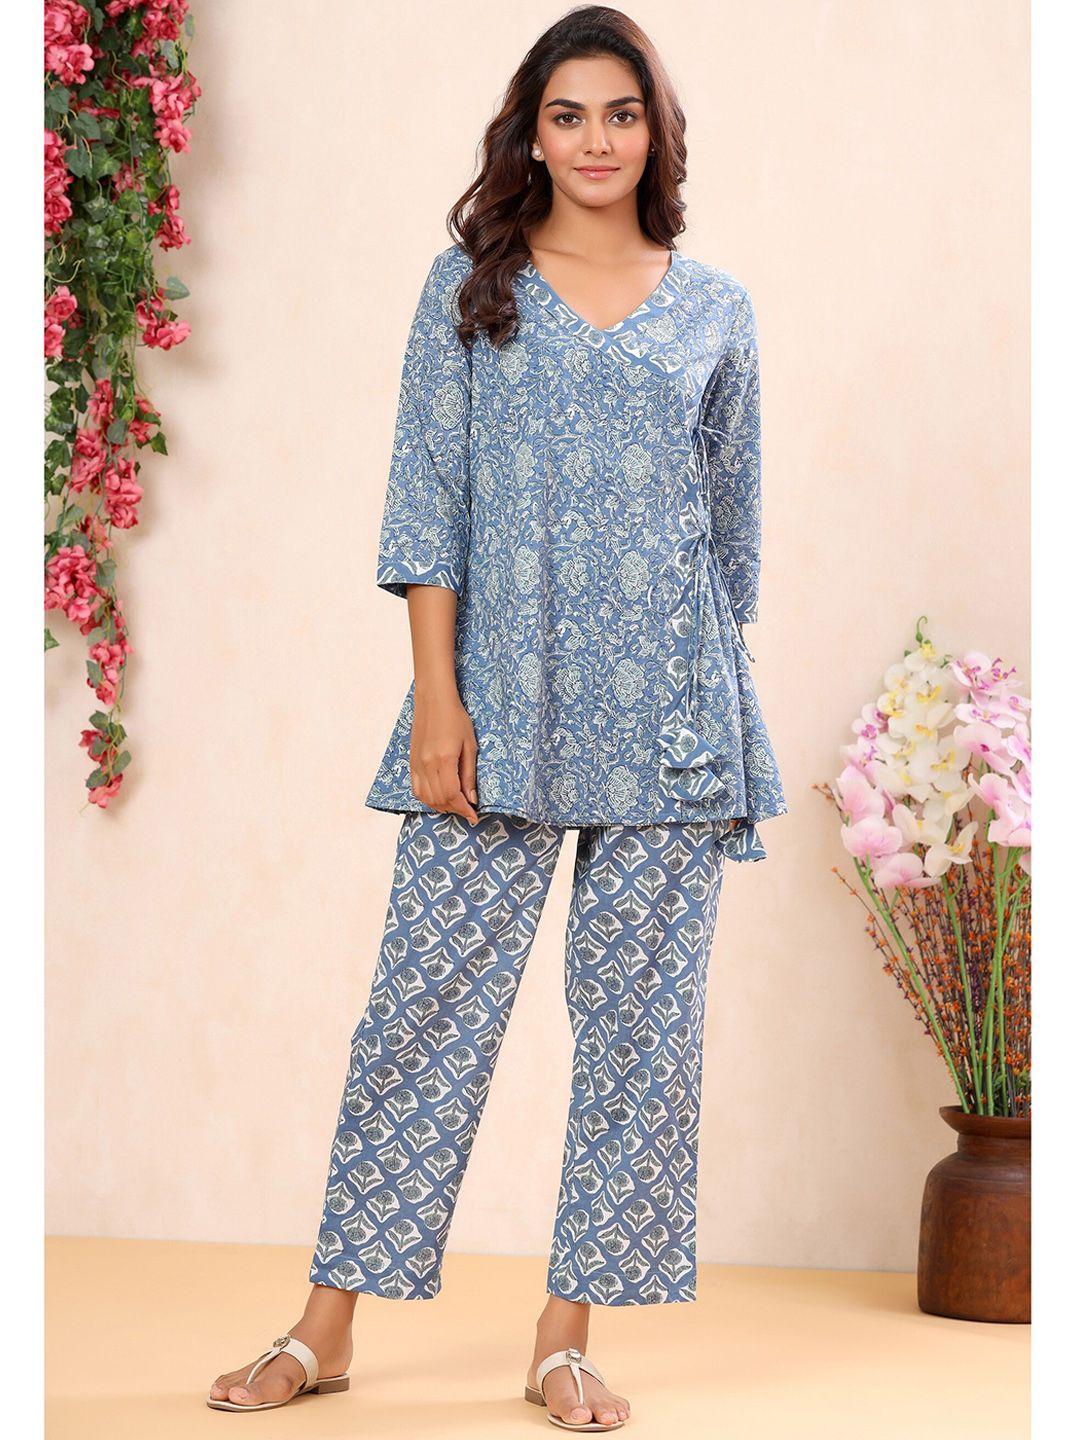 mirari blue ethnic motifs printed angrakha pure cotton kurti with palazzos